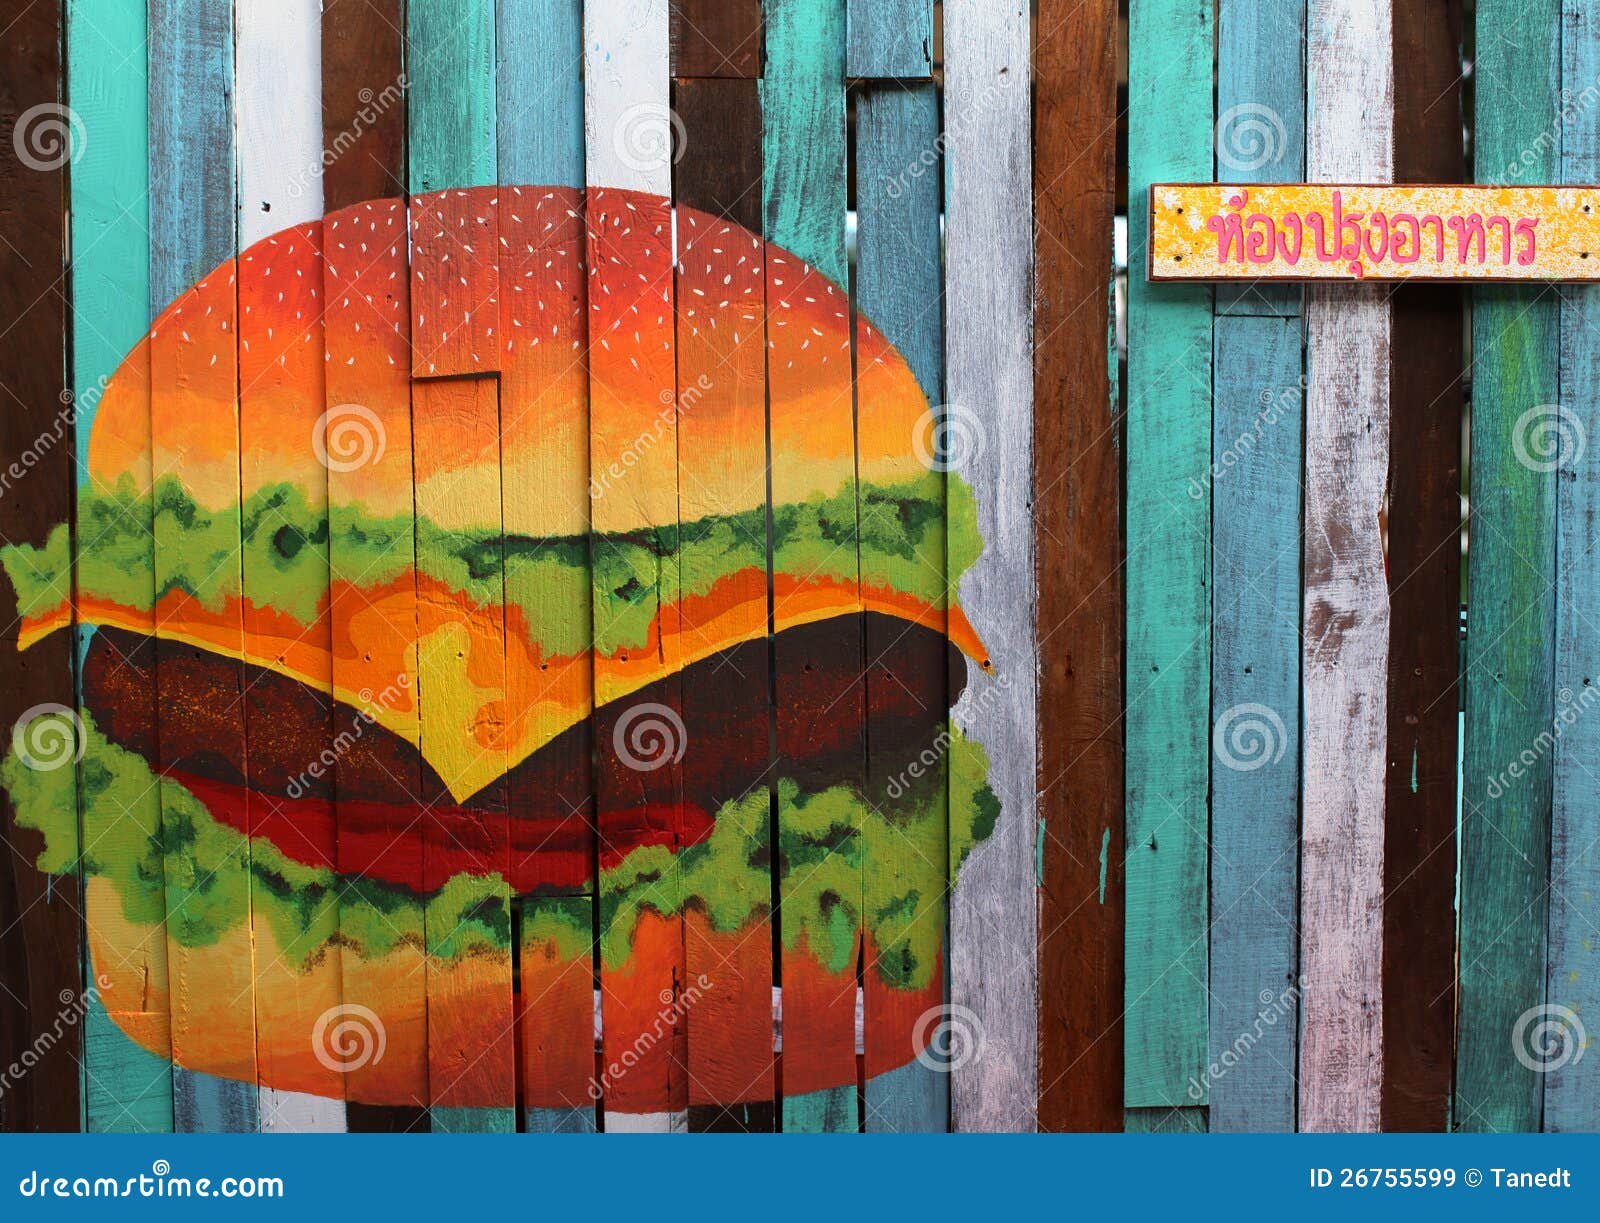 a hamburger drawing.